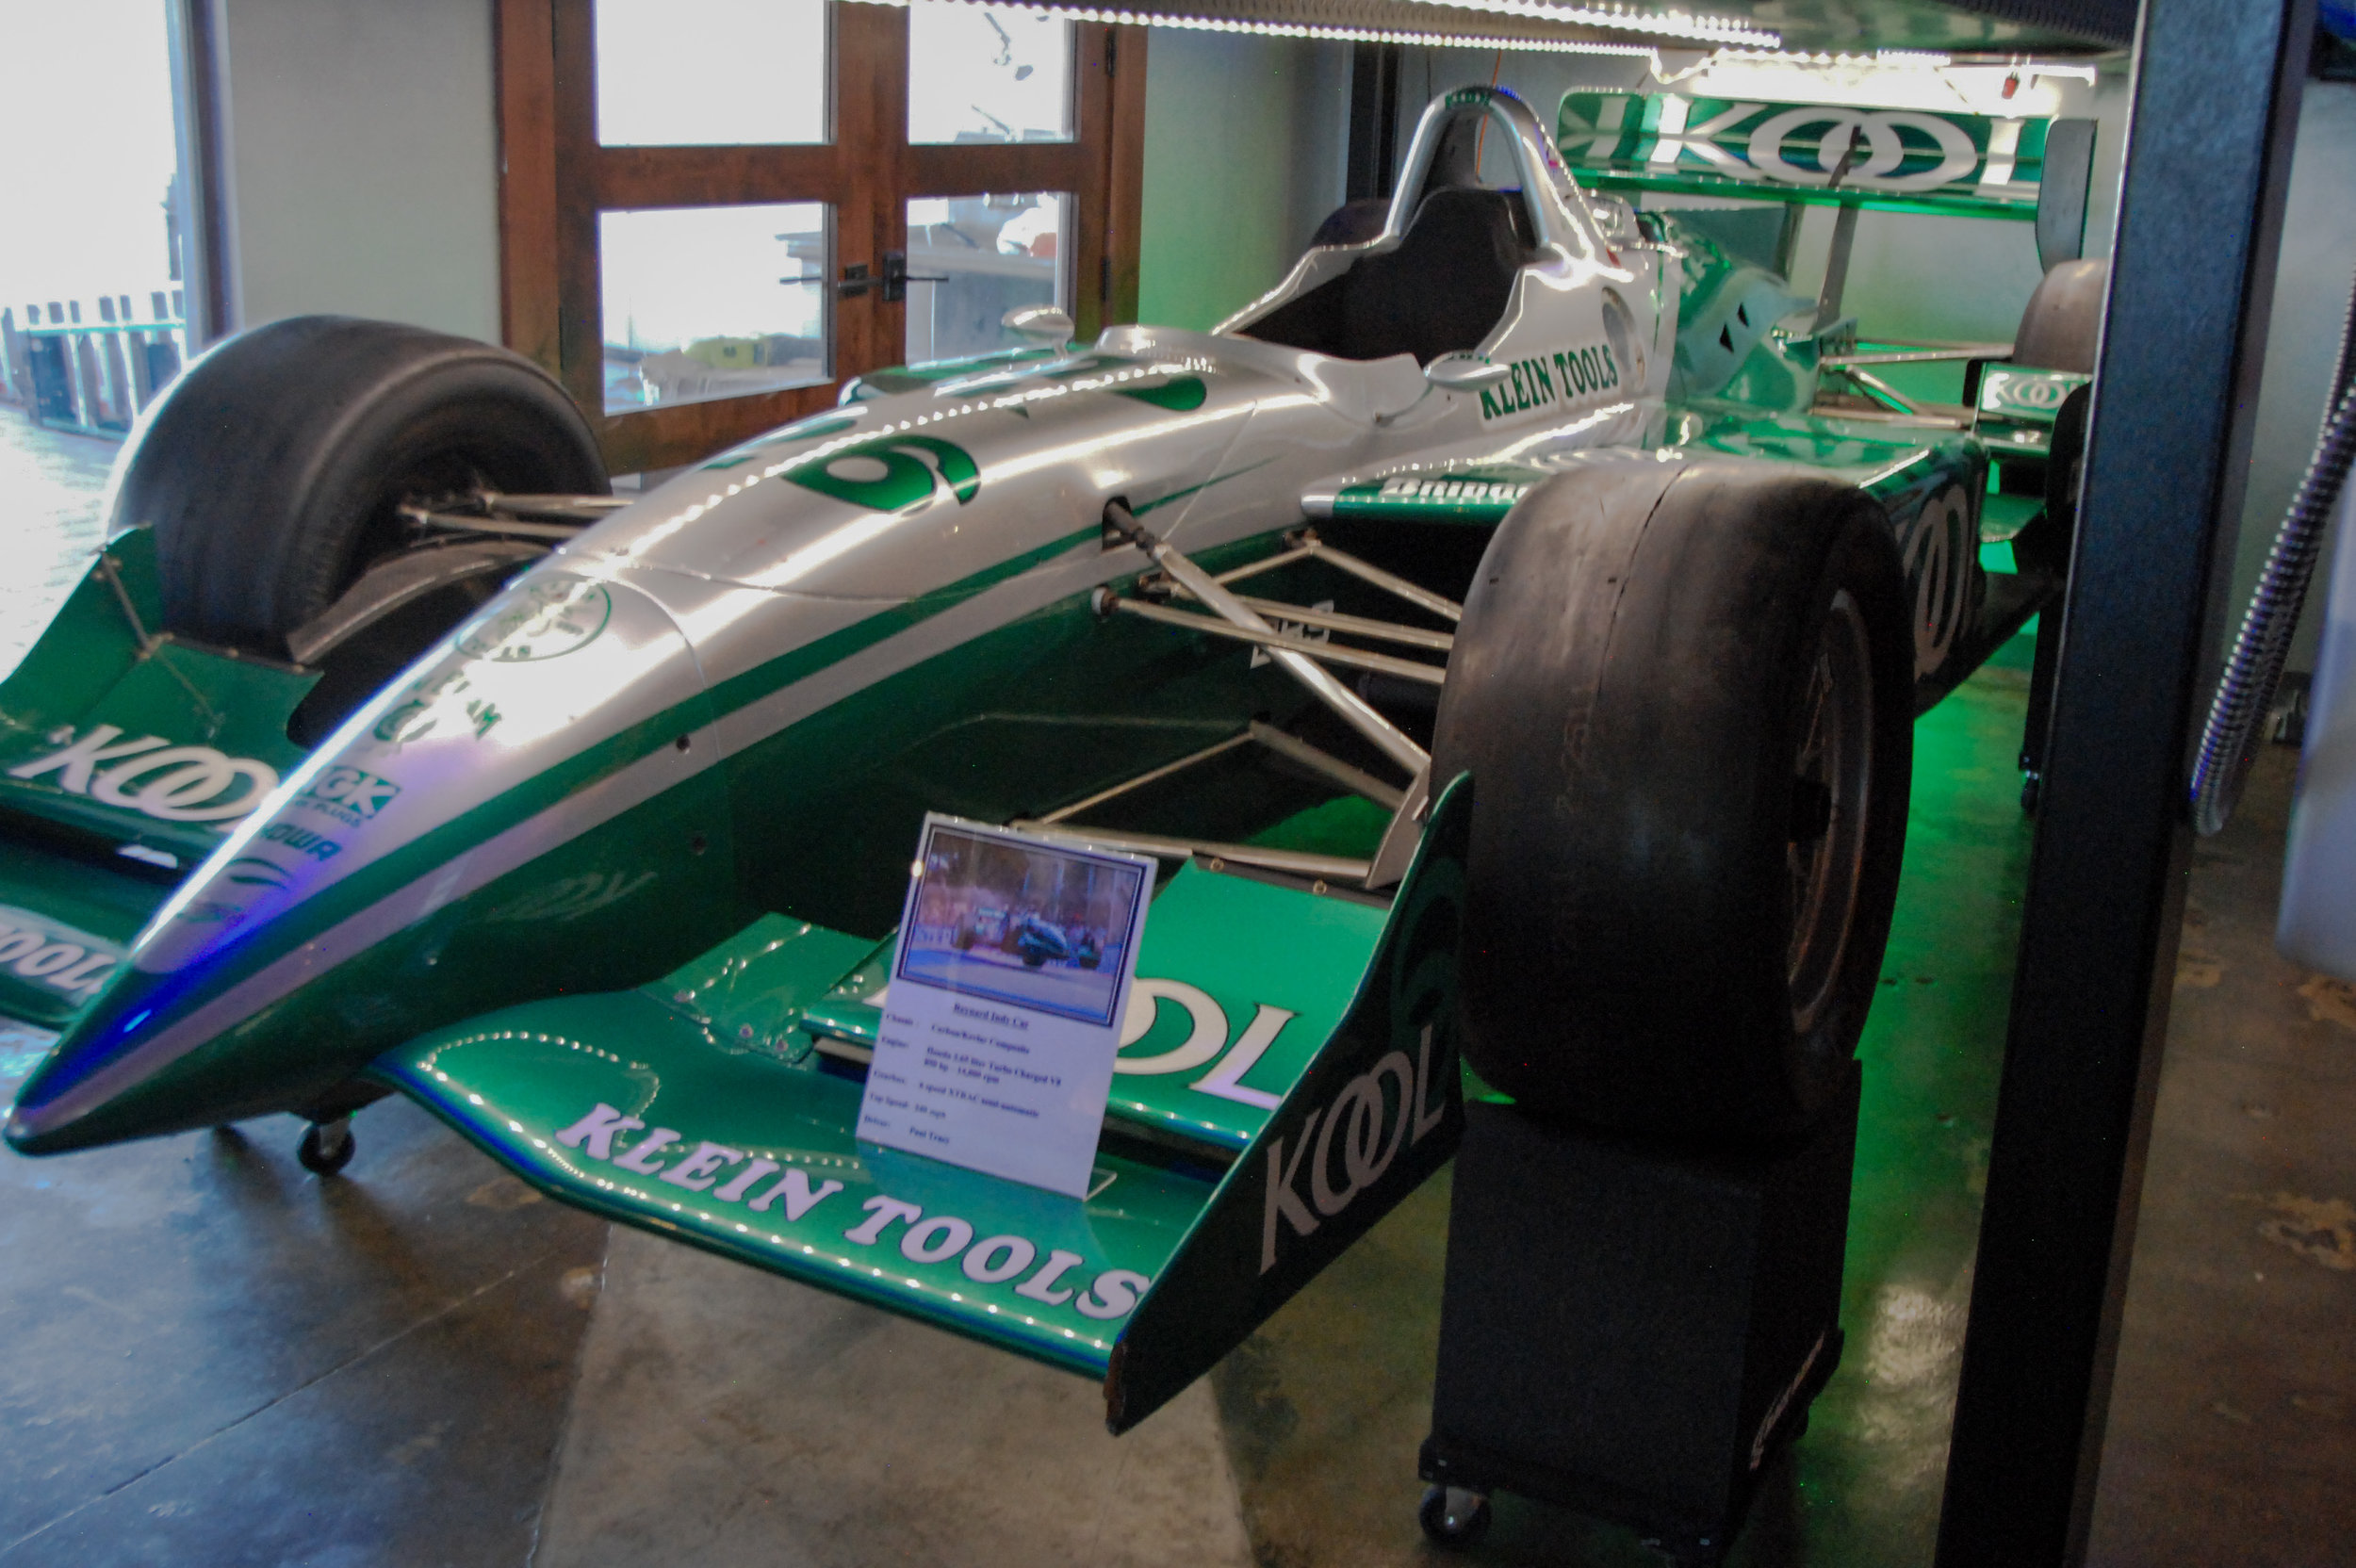 Paul Tracy's Indy Car Kool Car